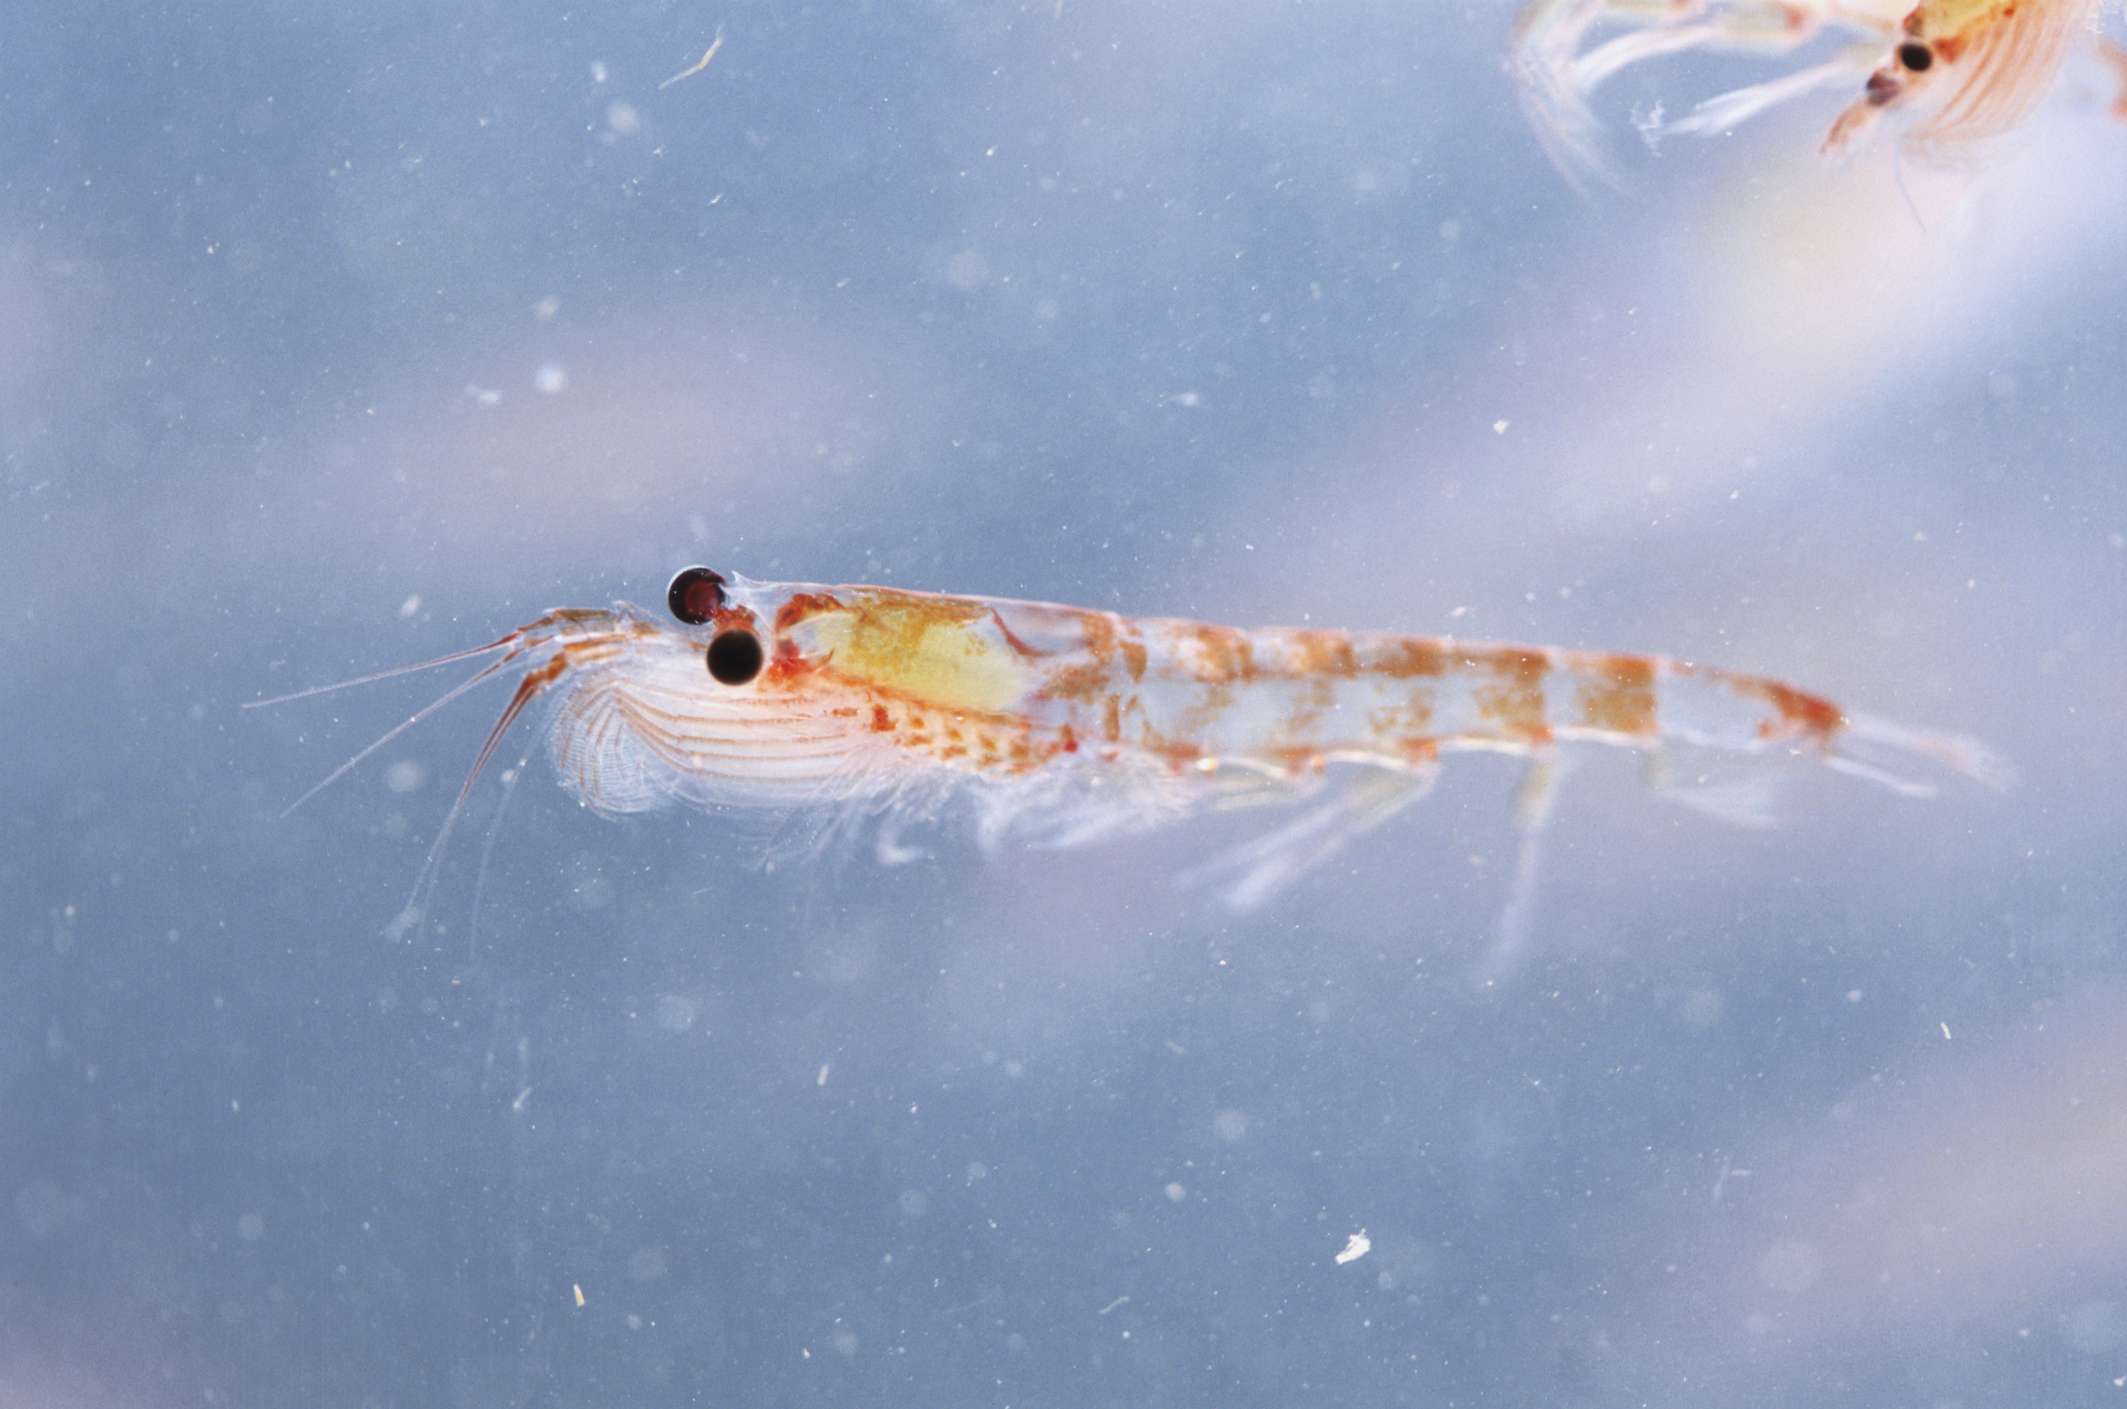 Un krill del Atlántico con ojos negros saltones y un cuerpo naranja y blanco flotando en agua azul